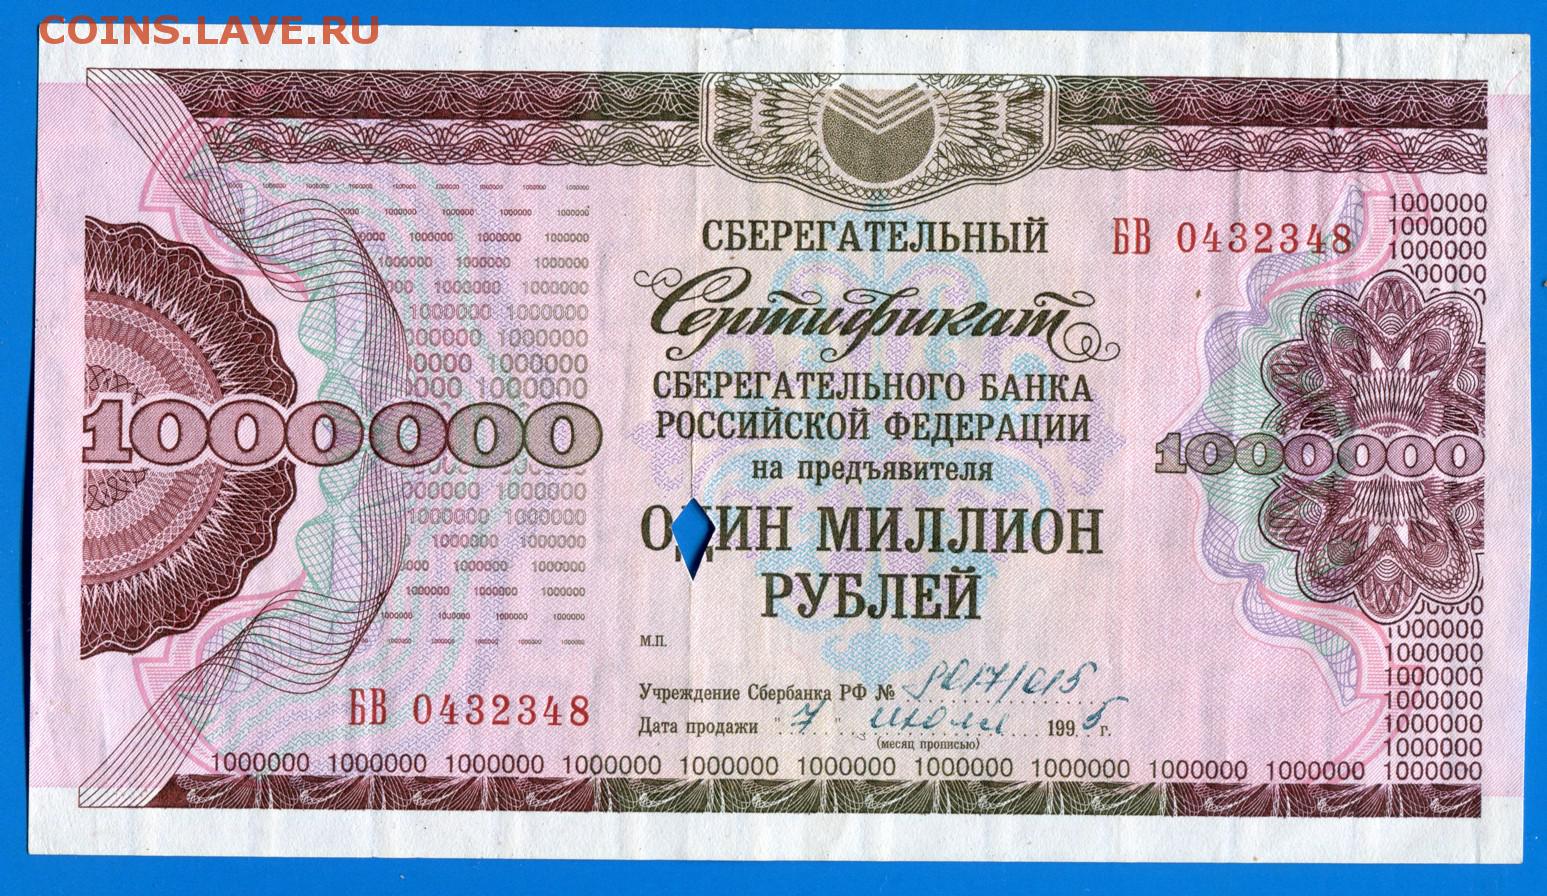 1000000 рублей продажа. Сертификат на 1000000 рублей. 1000000 Рублей 1995 года. Купюра 1000000 1995. Купюра 1000000 рублей 1995.